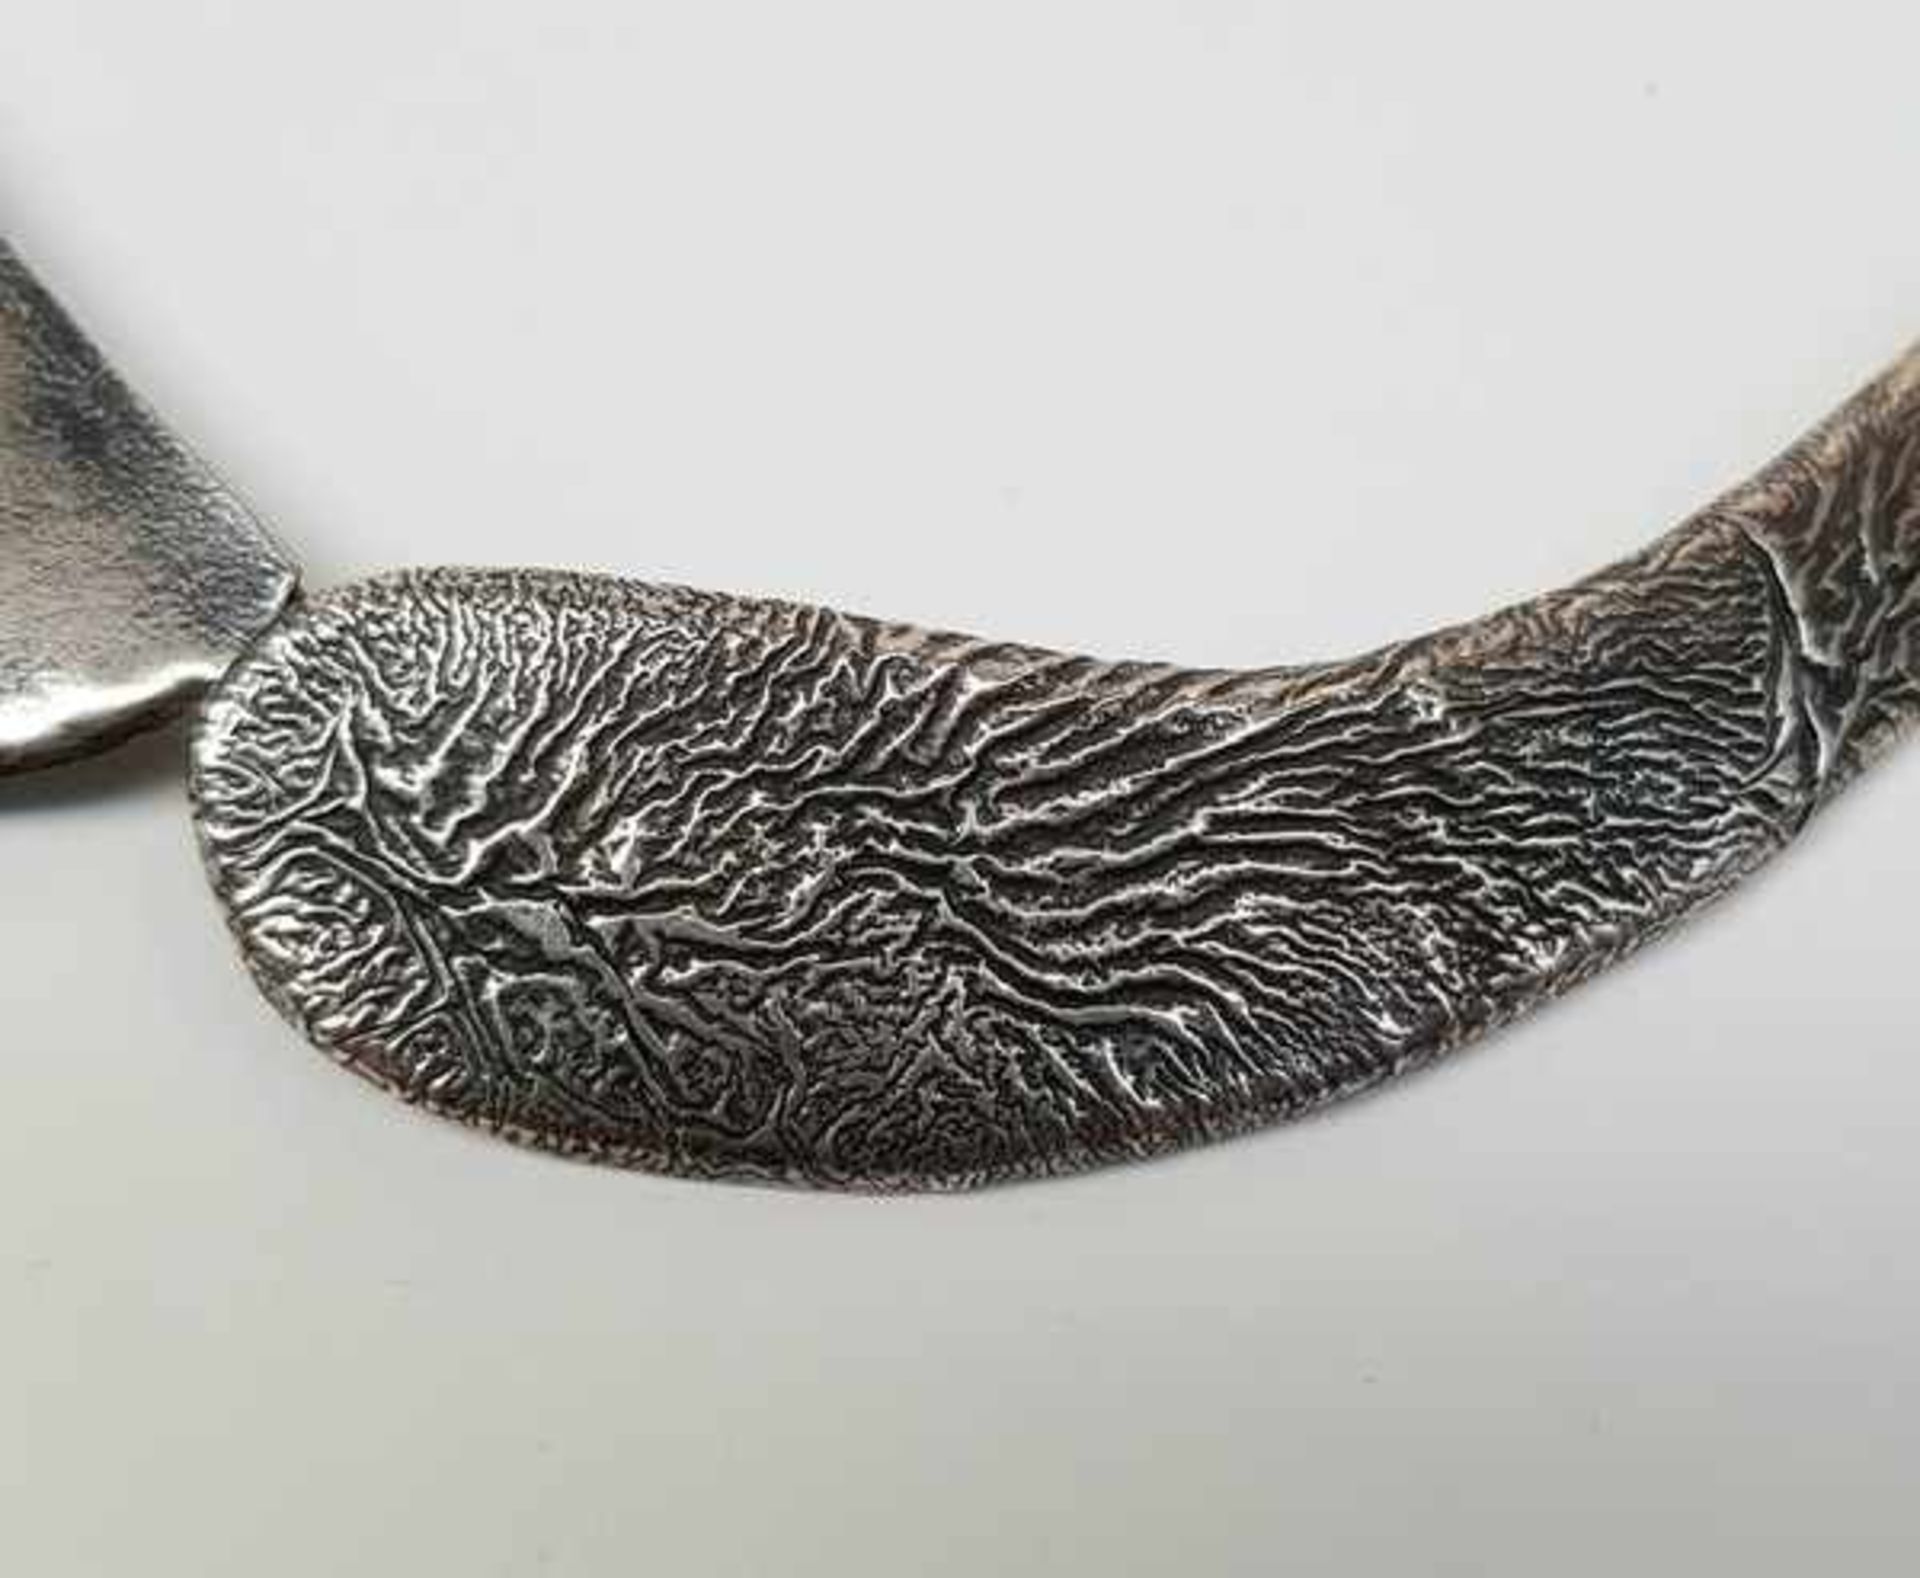 (Zilver) Zilver, Modernist Halsketting + oorbellen, Duitsland.Zilver, Modernist Halsketting + - Bild 8 aus 8